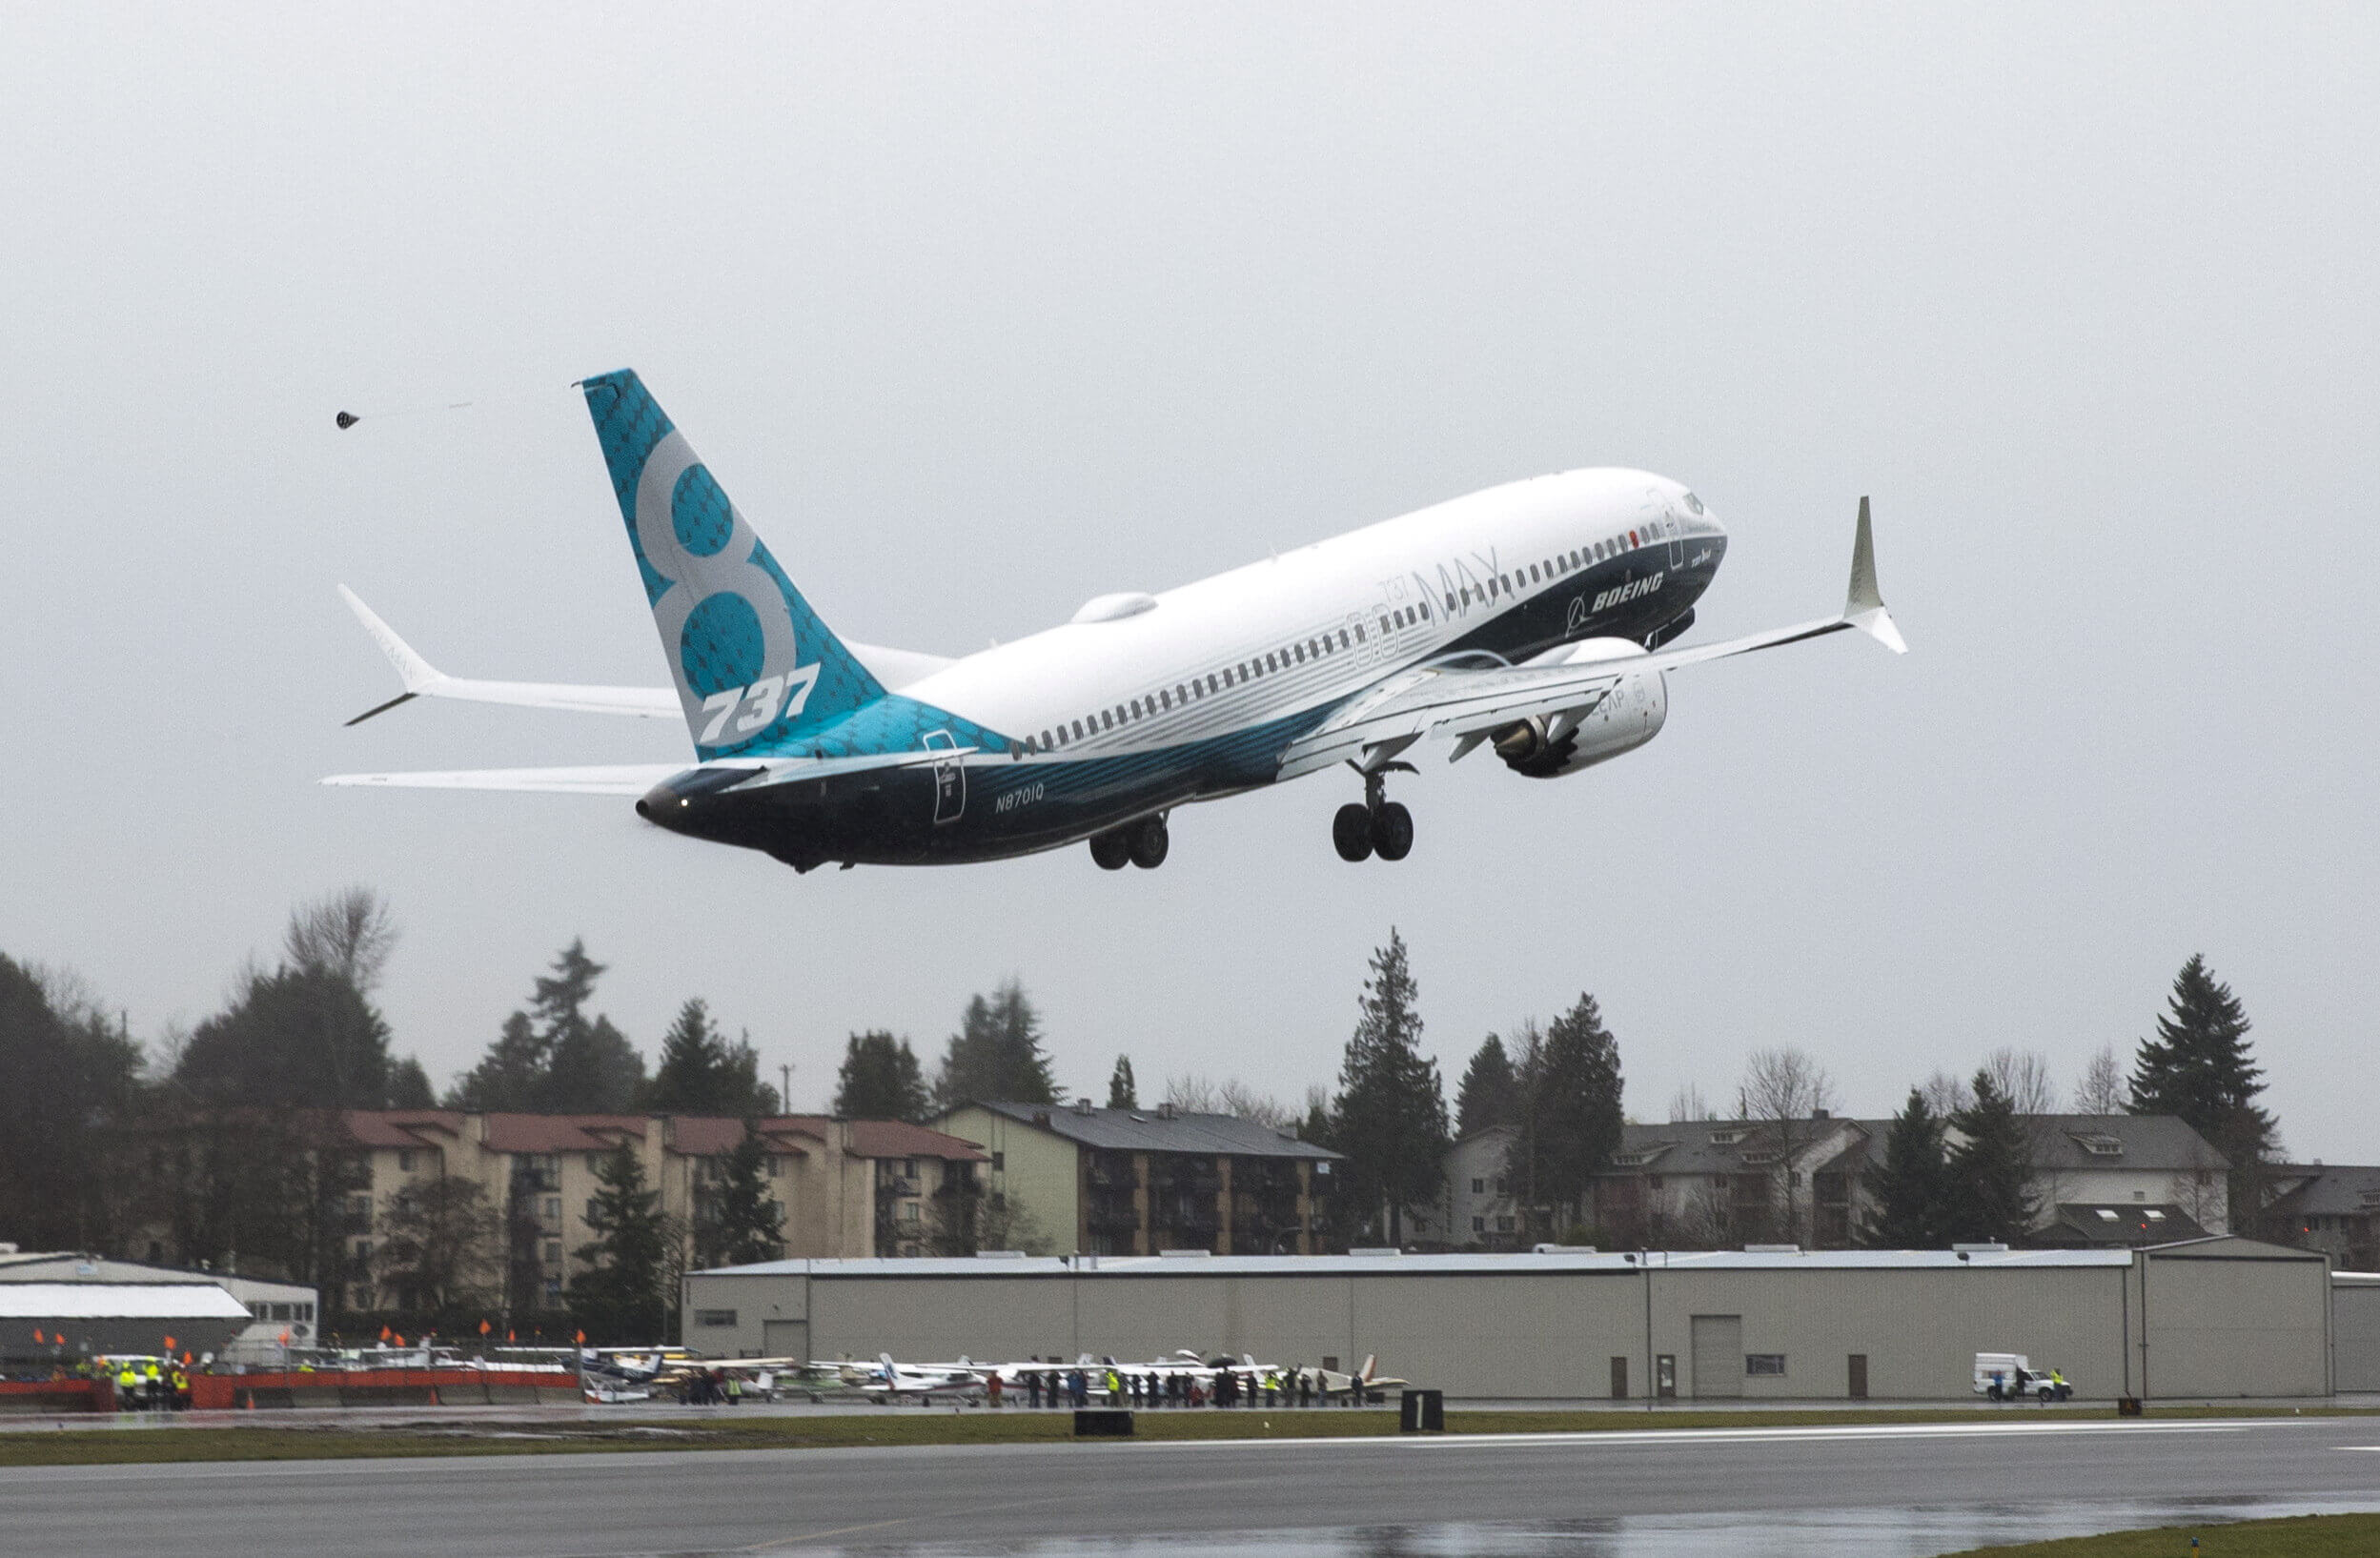 Μειώνεται η παραγωγή των Boeing 737 MAX μετά τα πολύνεκρα δυστυχήματα